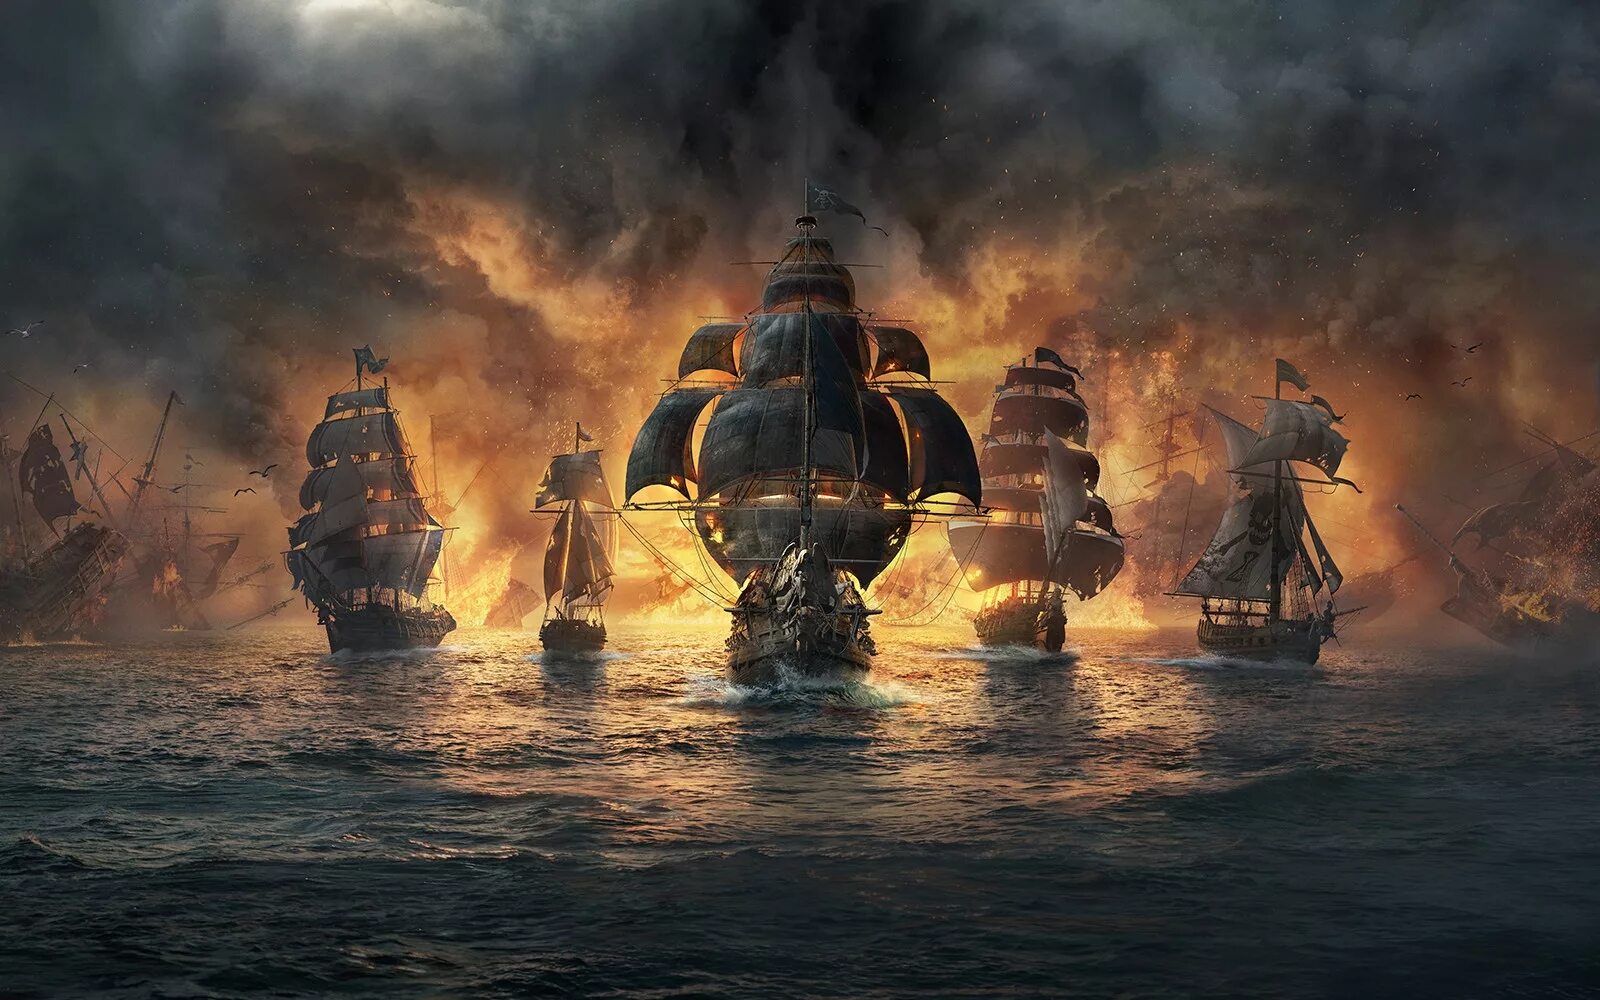 Пираты Карибского моря морской бой. Игра “Skull & Bones” (2020). Skull and Bones игра корабли. Морское сражение пираты Карибского моря.